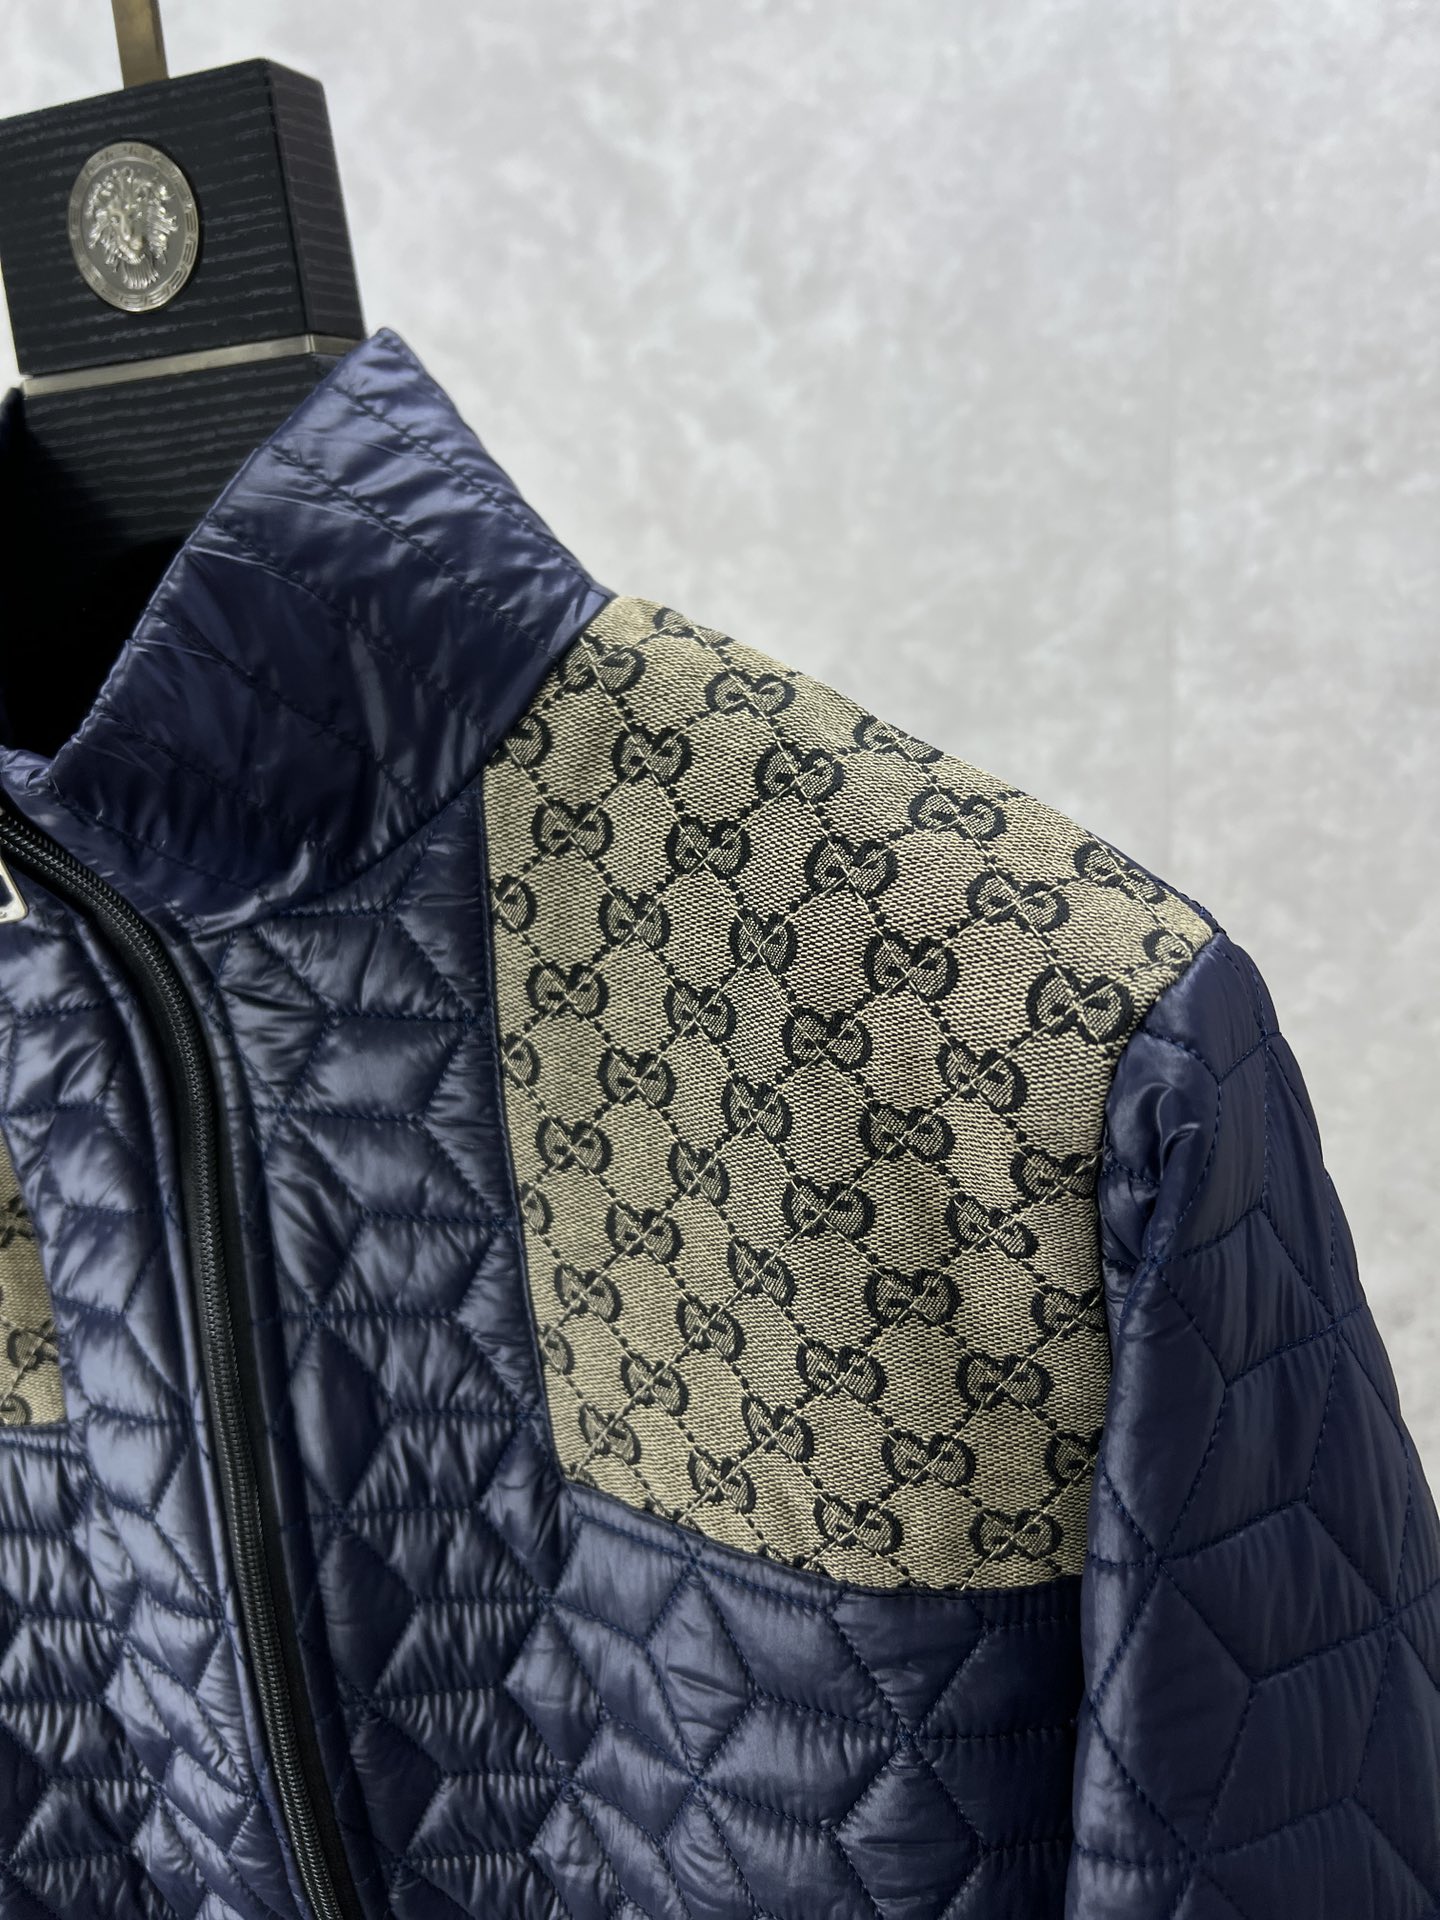 Gucci古奇新款GG老花拼接绗缝夹棉夹克本款整个设计注入典藏气息品牌标识细节则尽展大胆不羁的现代风范G